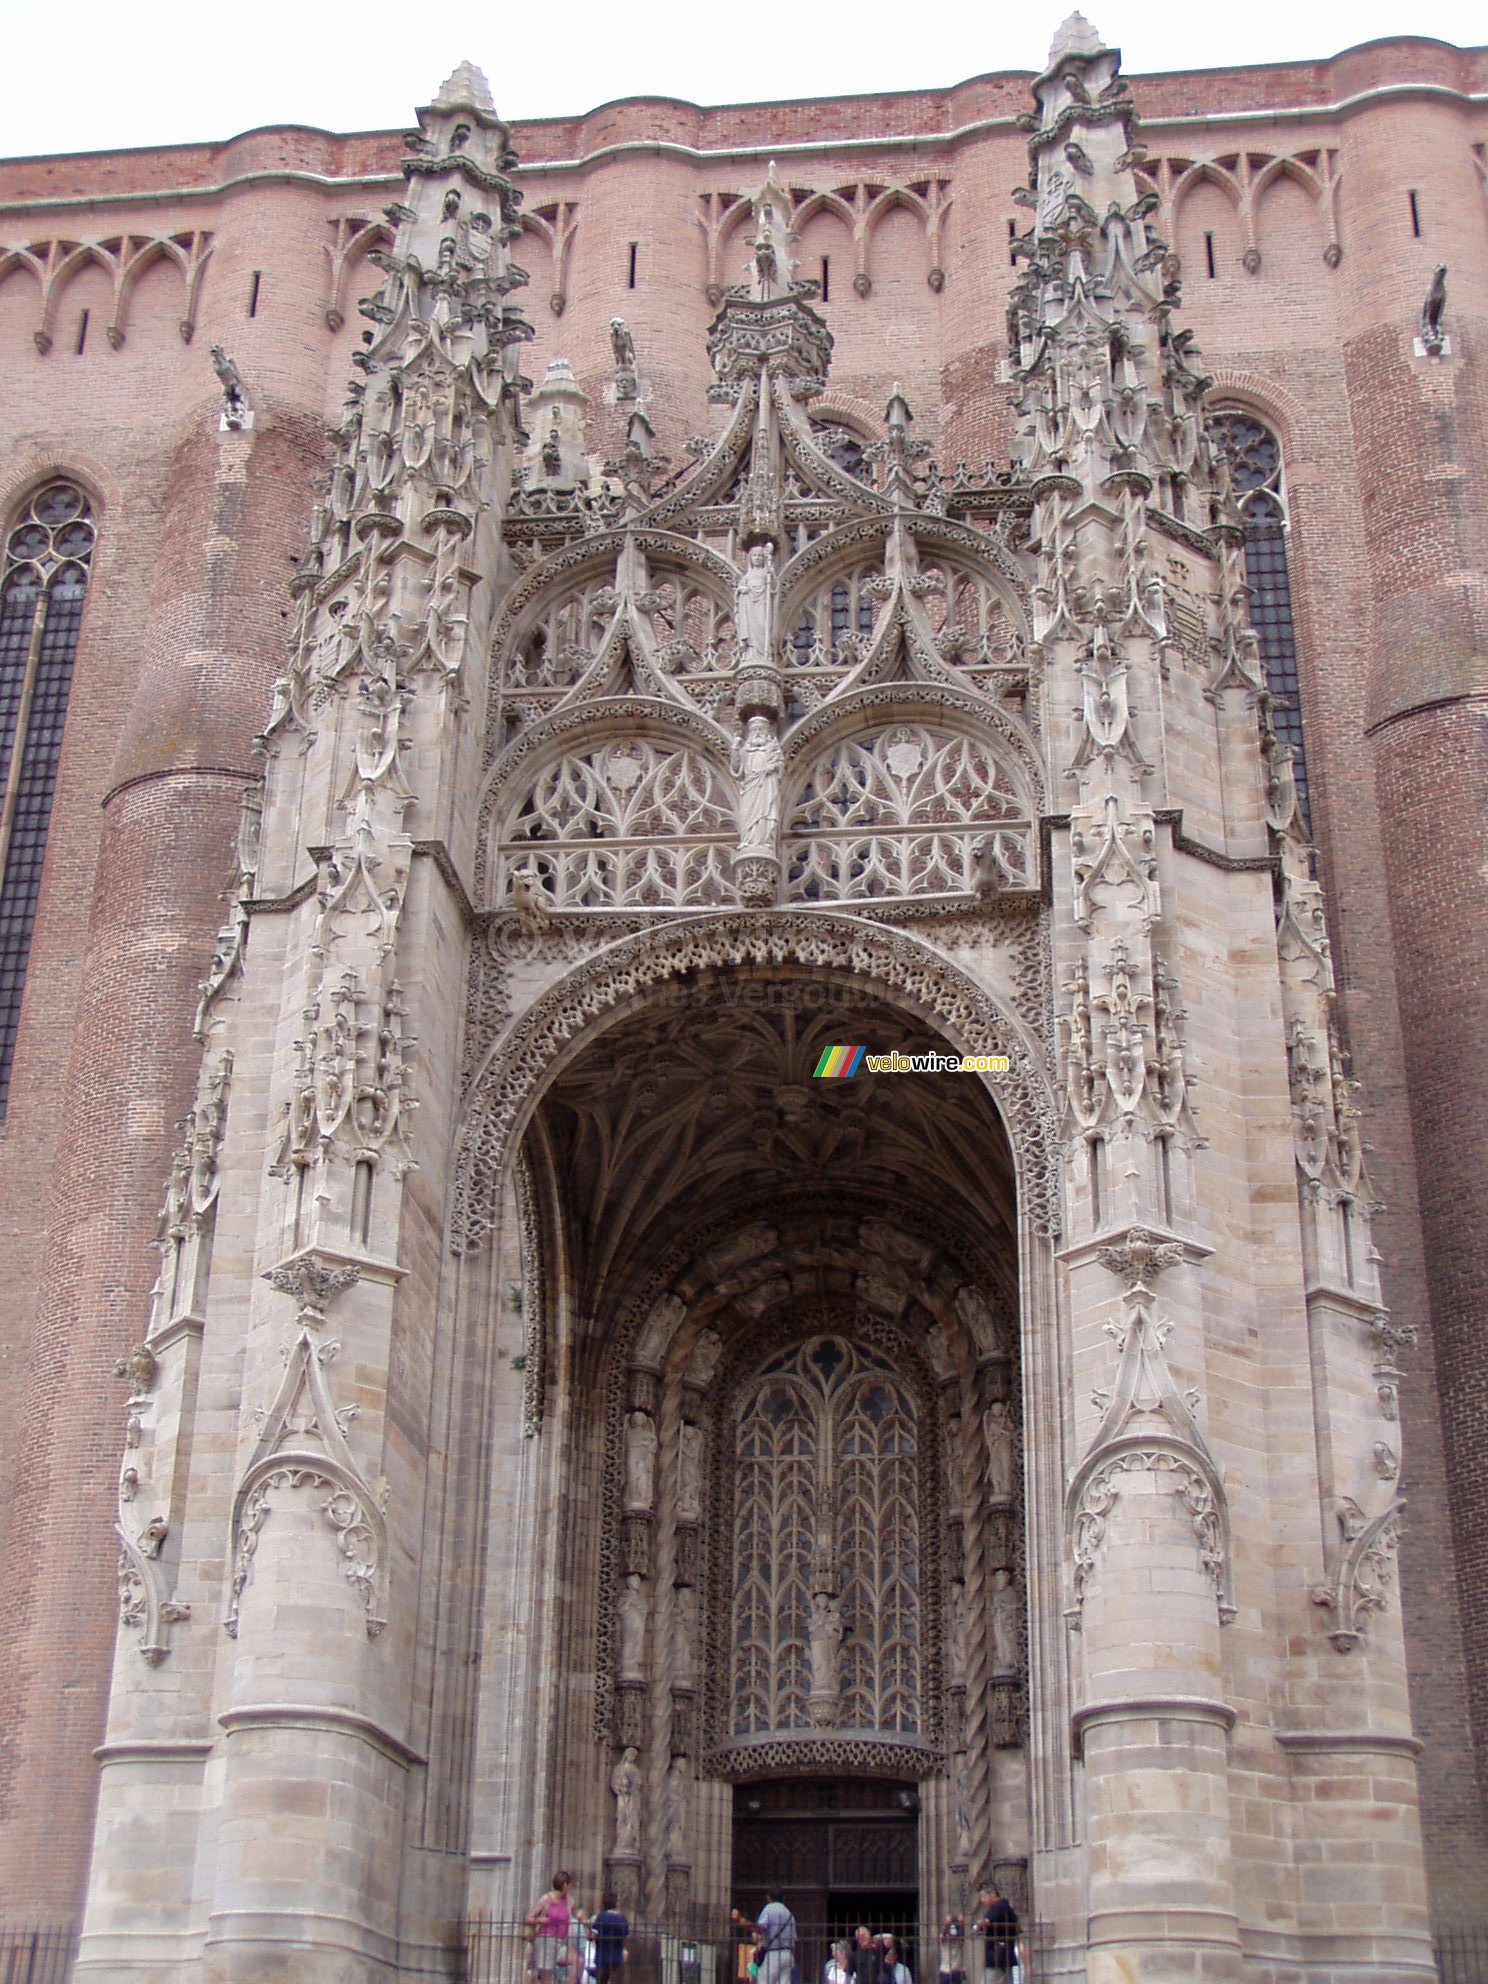 The impressive entrance of the Basilique Sainte-Ccile in Albi